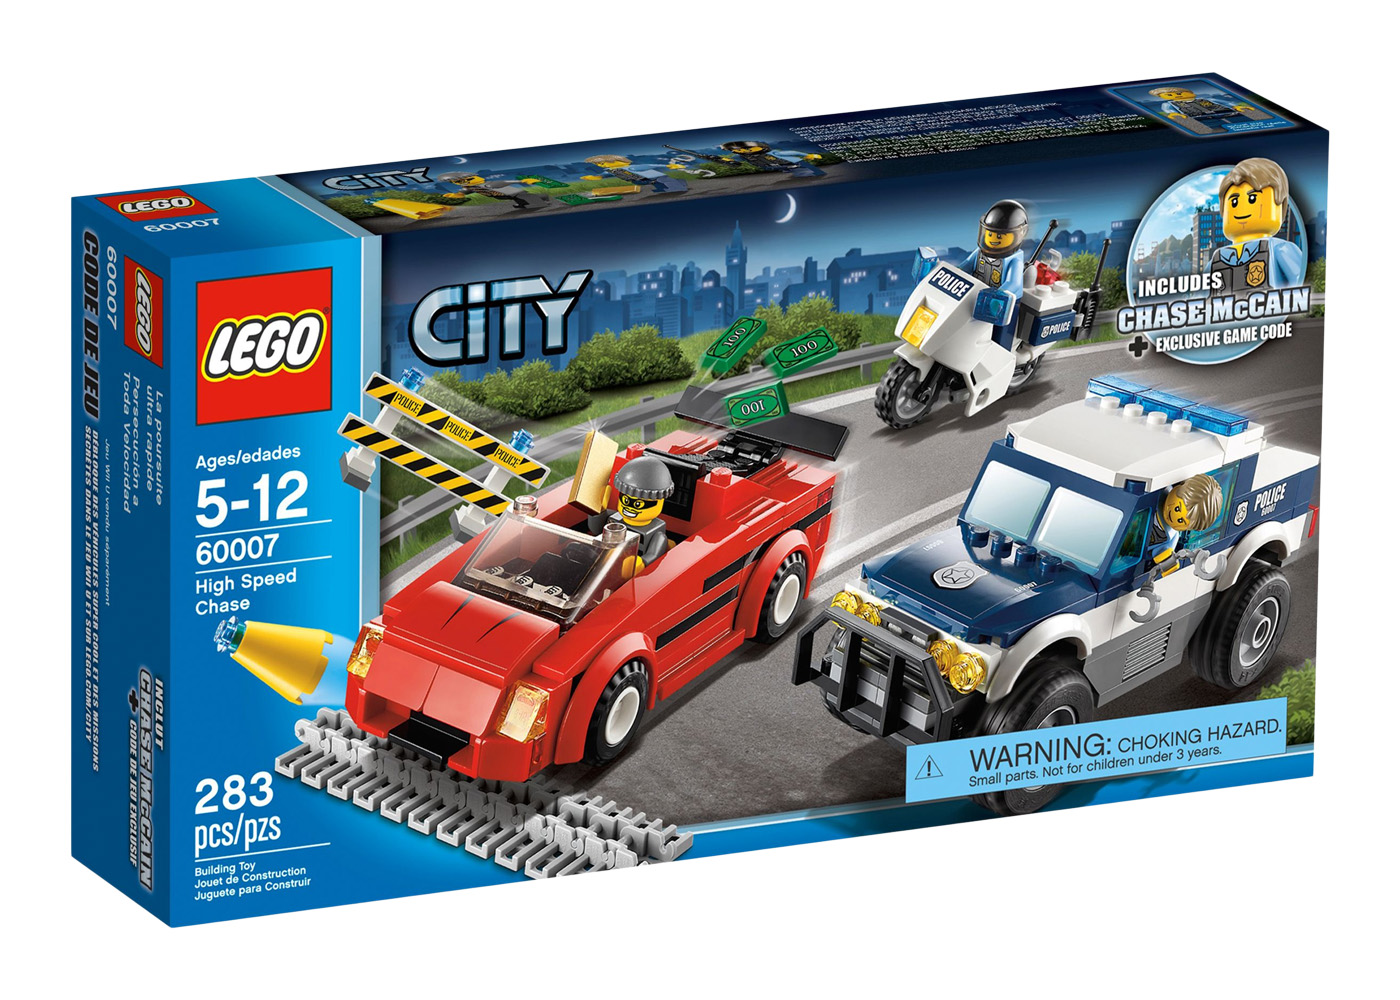 LEGO City High Speed Chase Set 60007